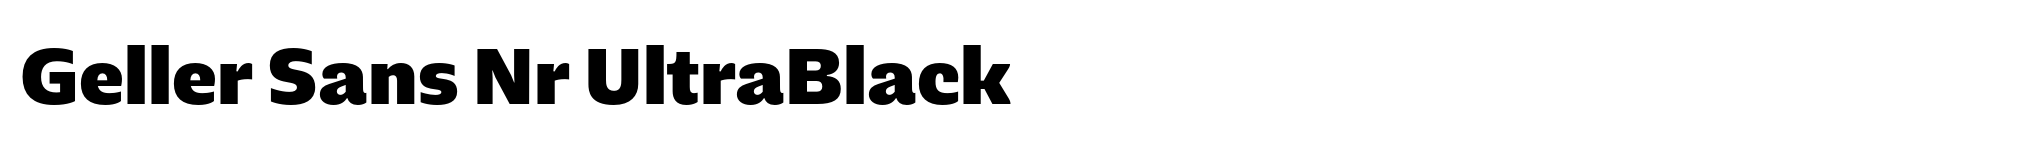 Geller Sans Nr UltraBlack image